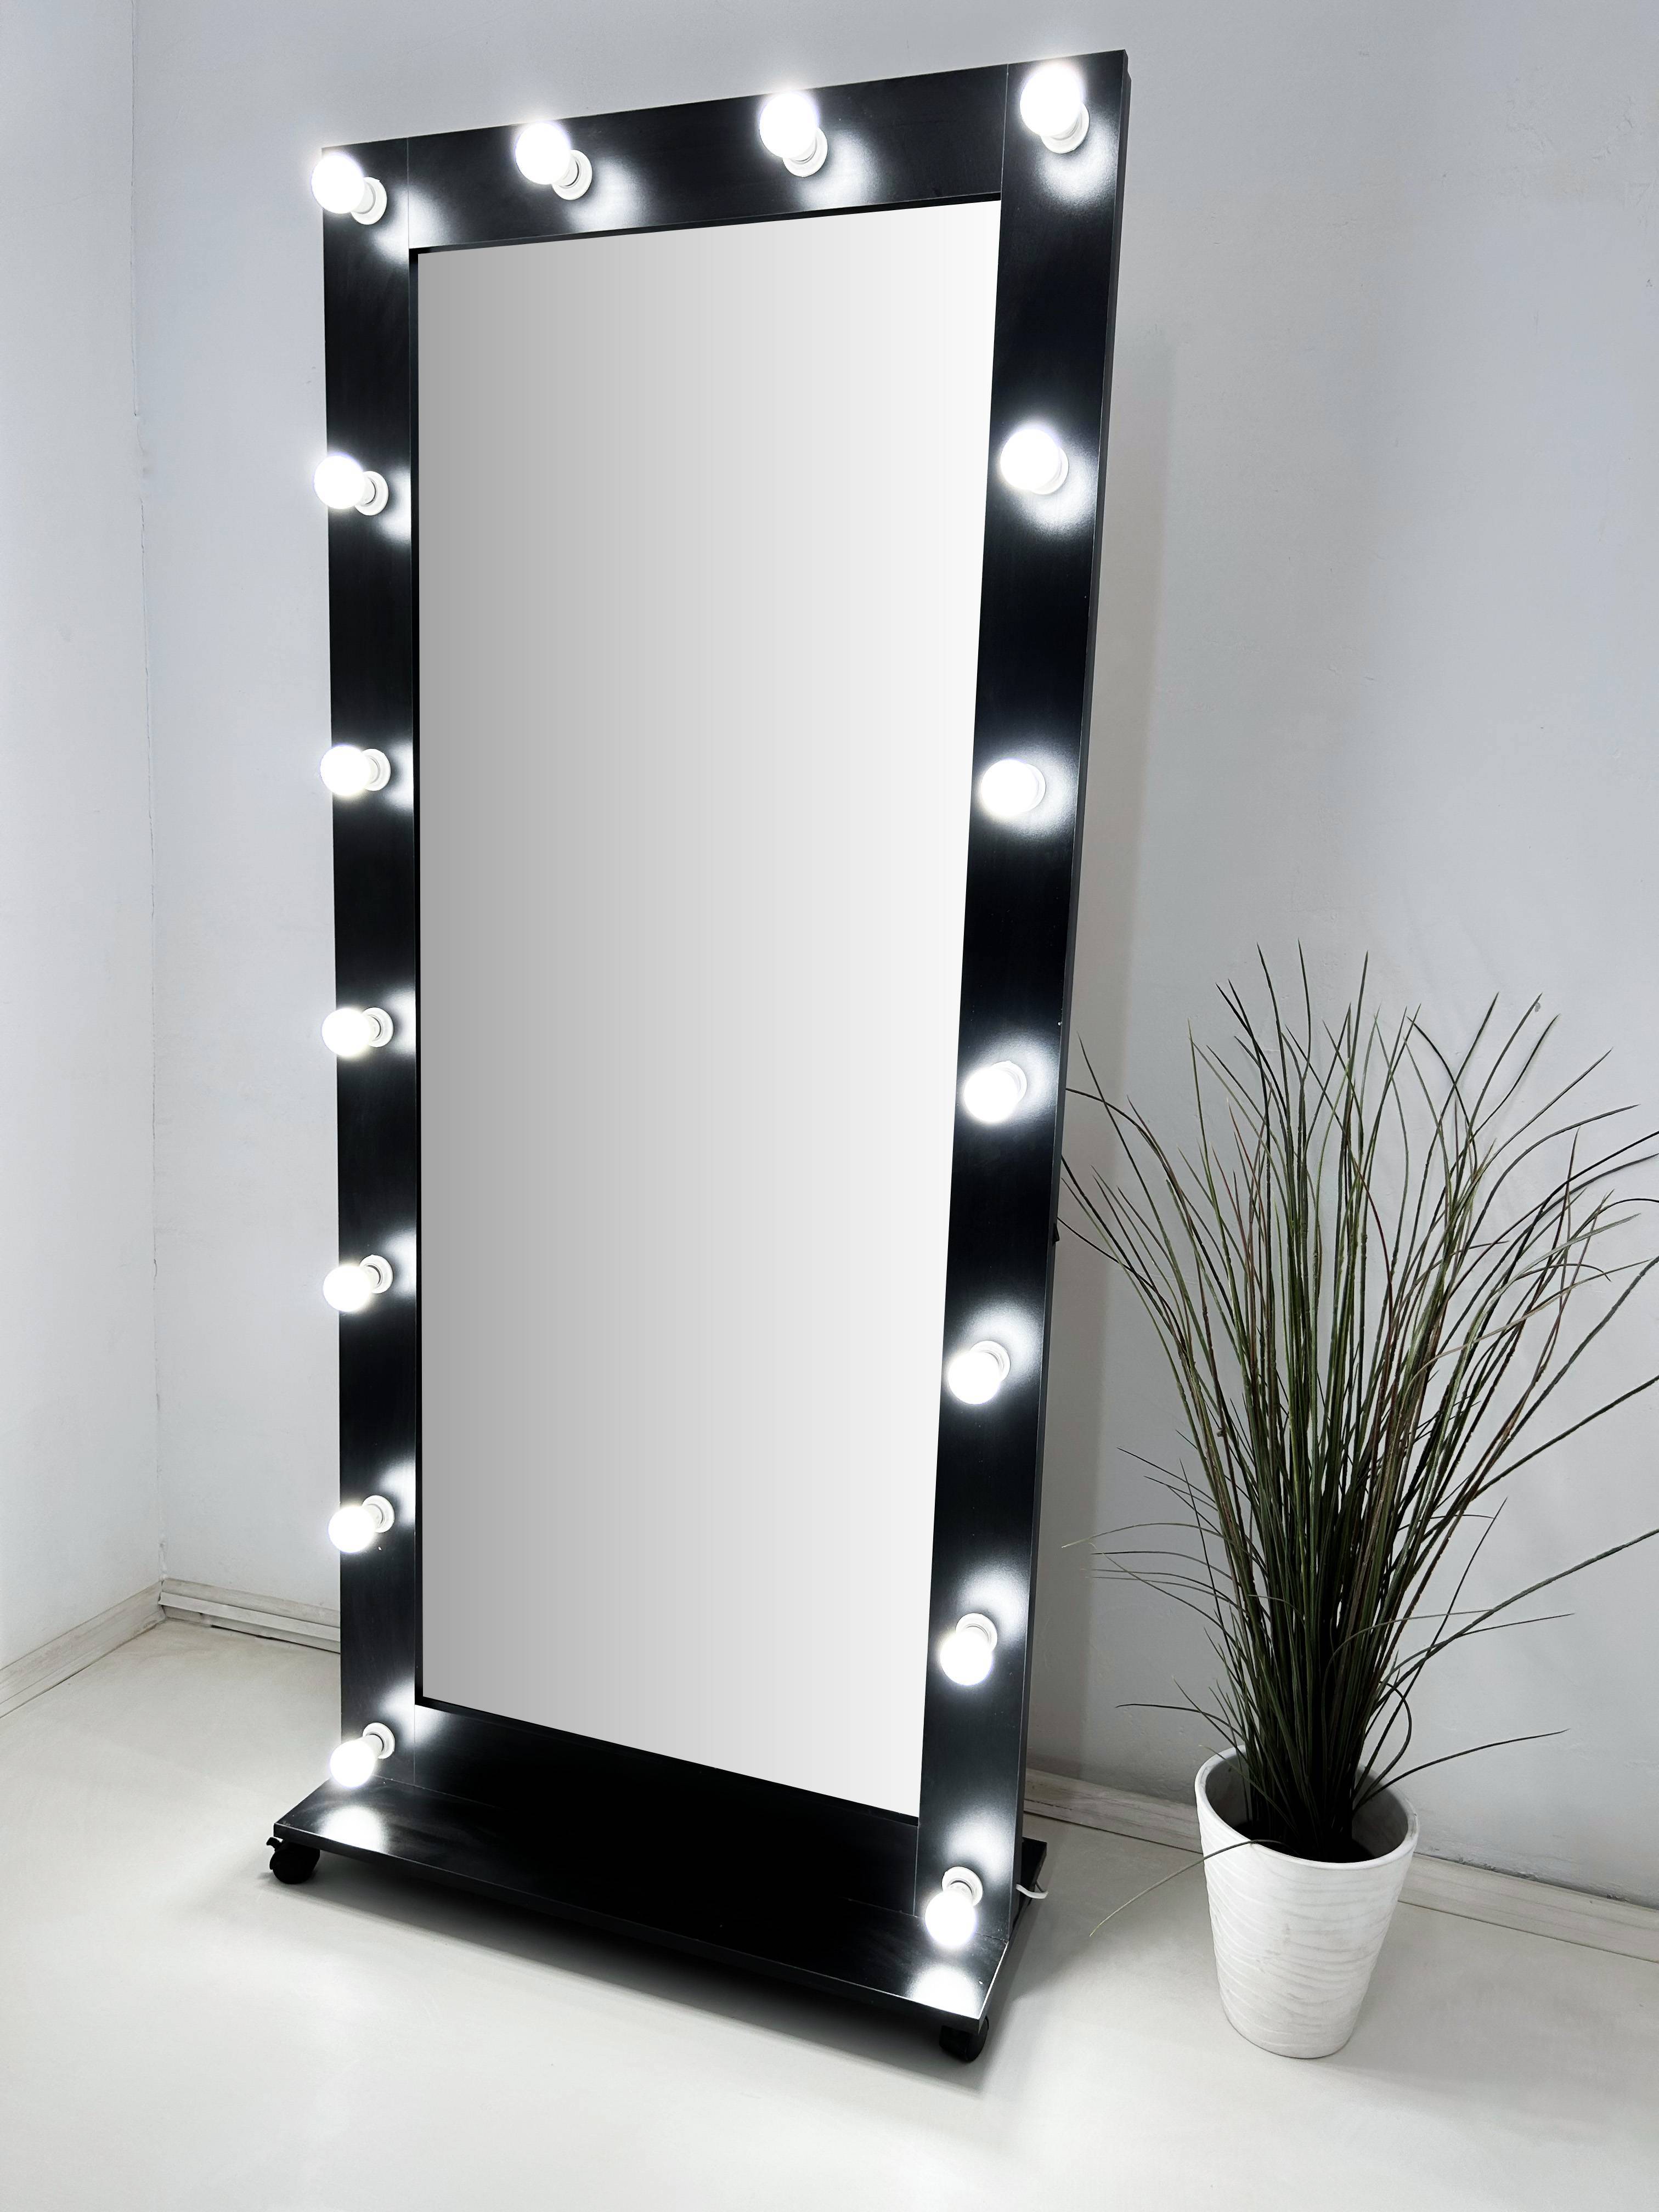 91066223 Гримерное зеркало с лампочками на подставке 182x80 см цвет черный STLM-0465742 BEAUTYUP